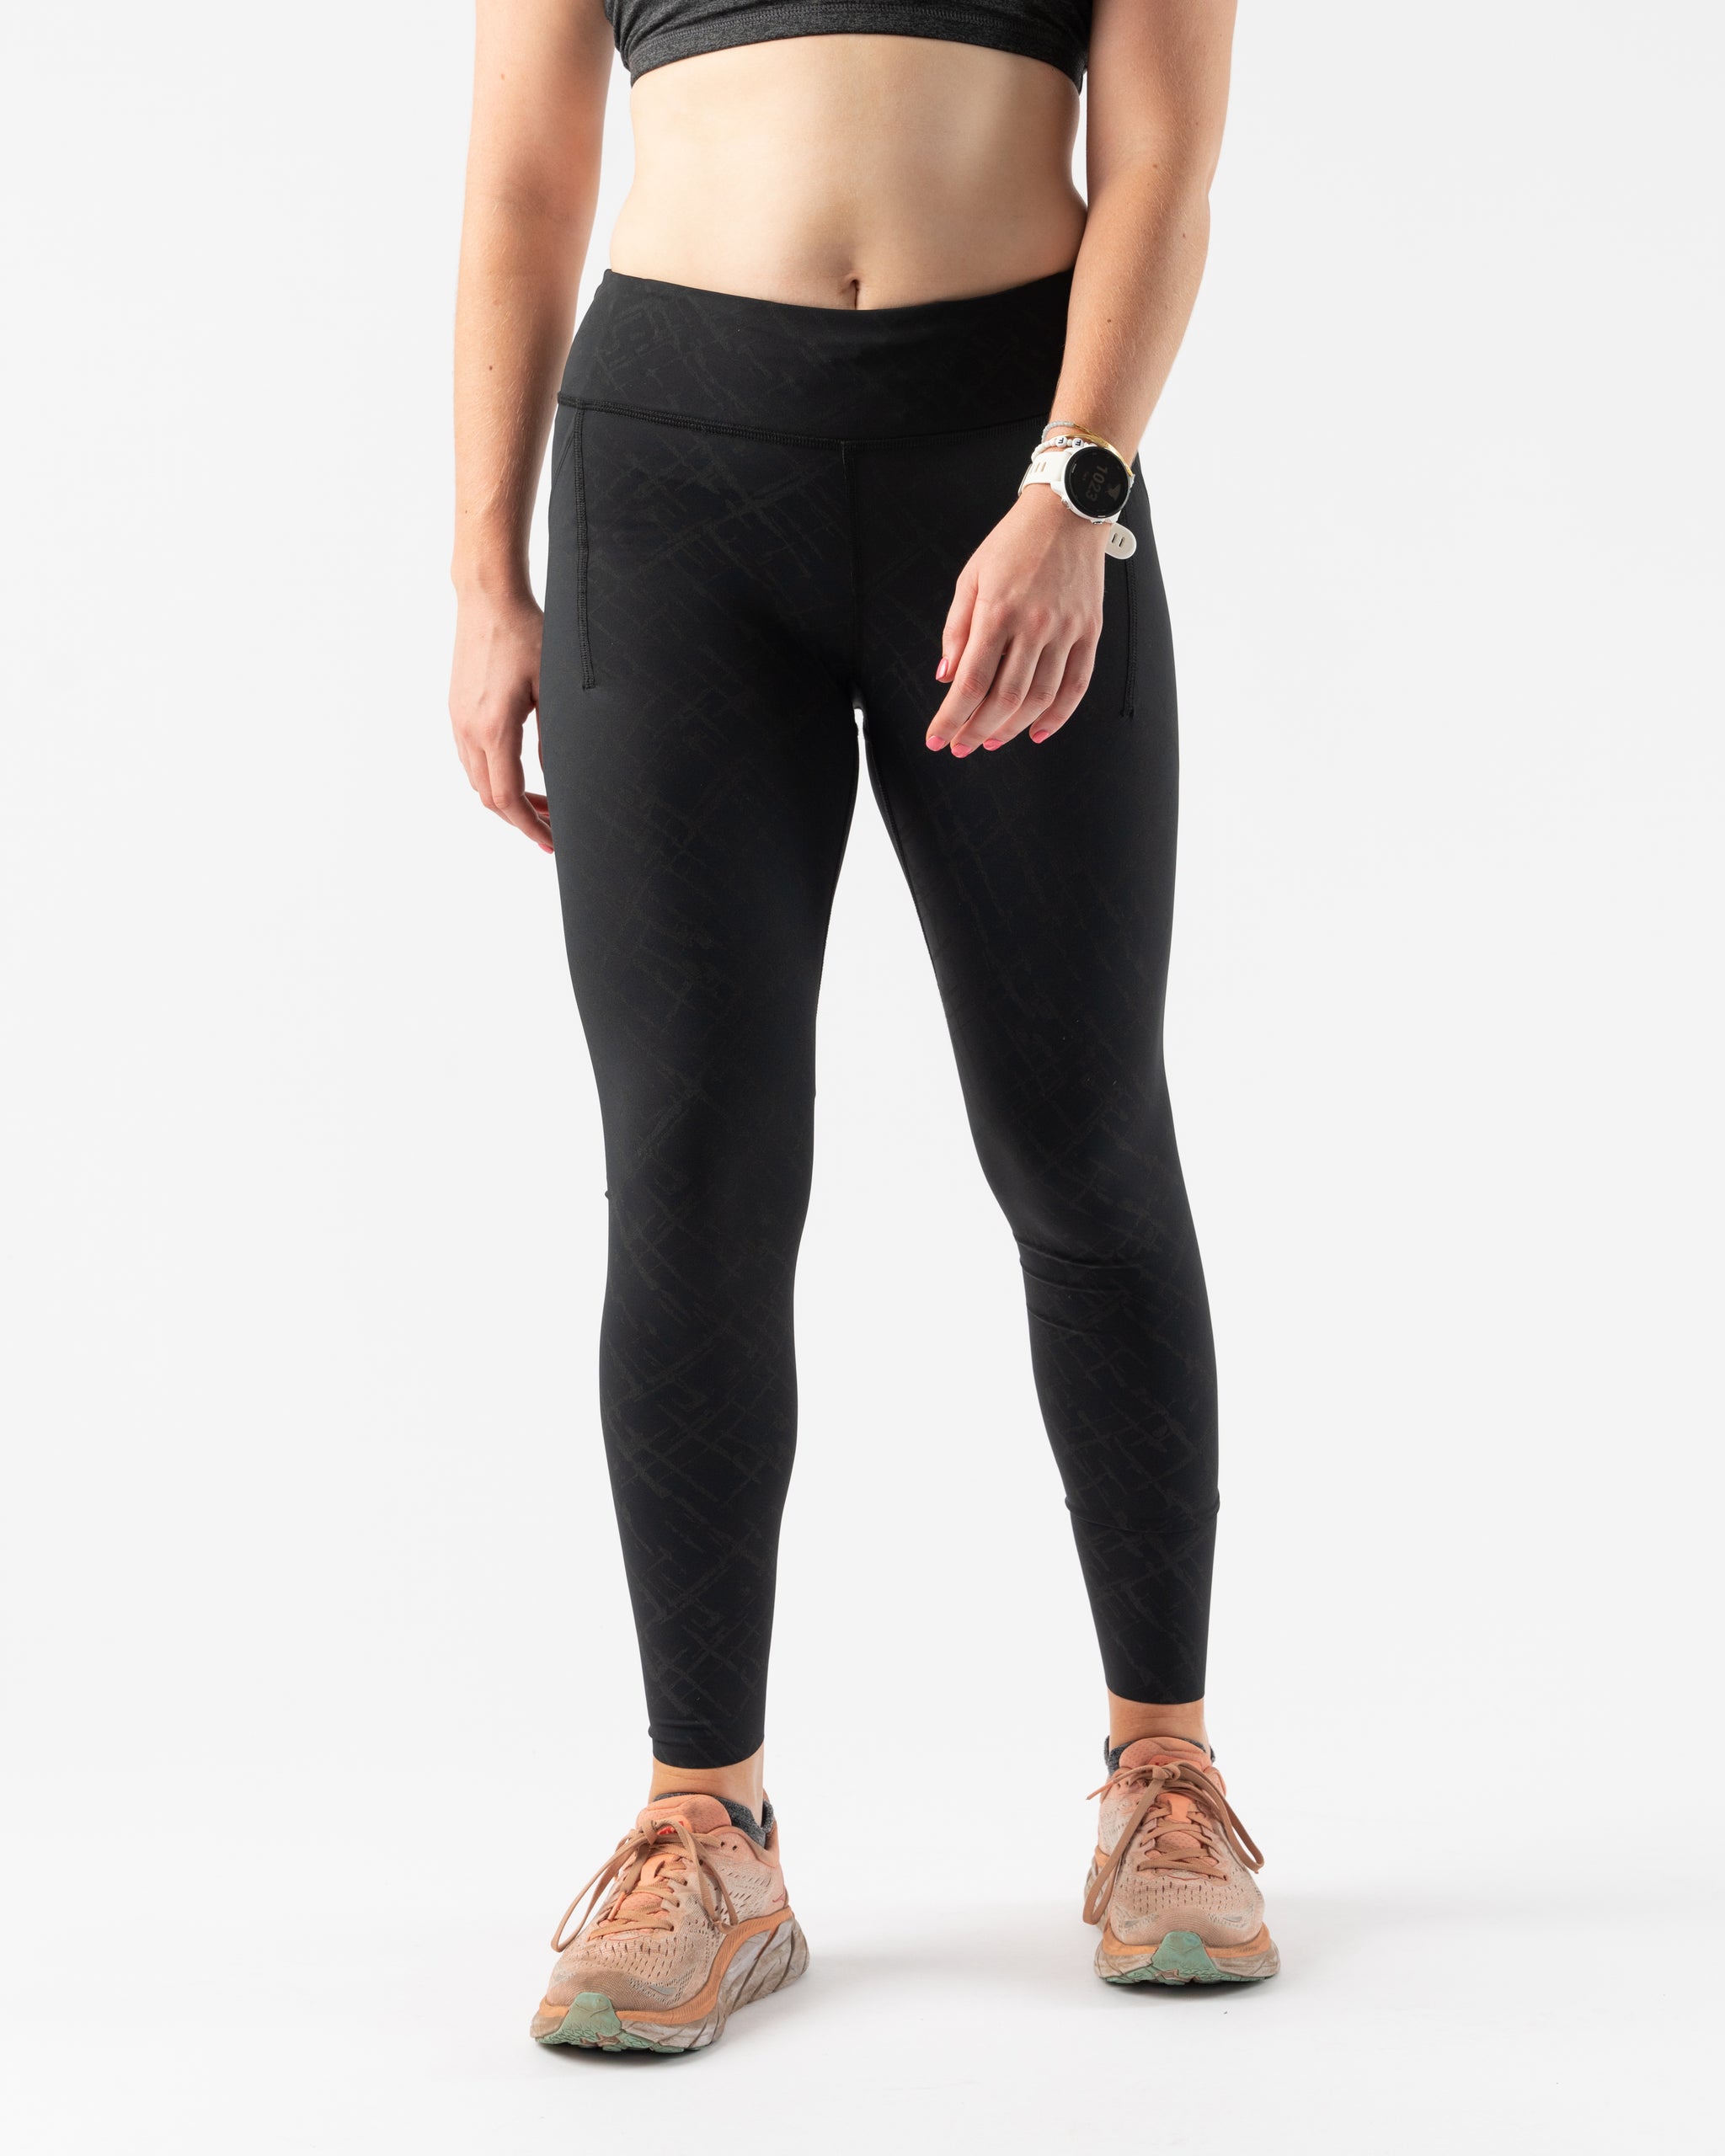 ReDesign Gym Yoga Running Legging Zip Pocket, Women